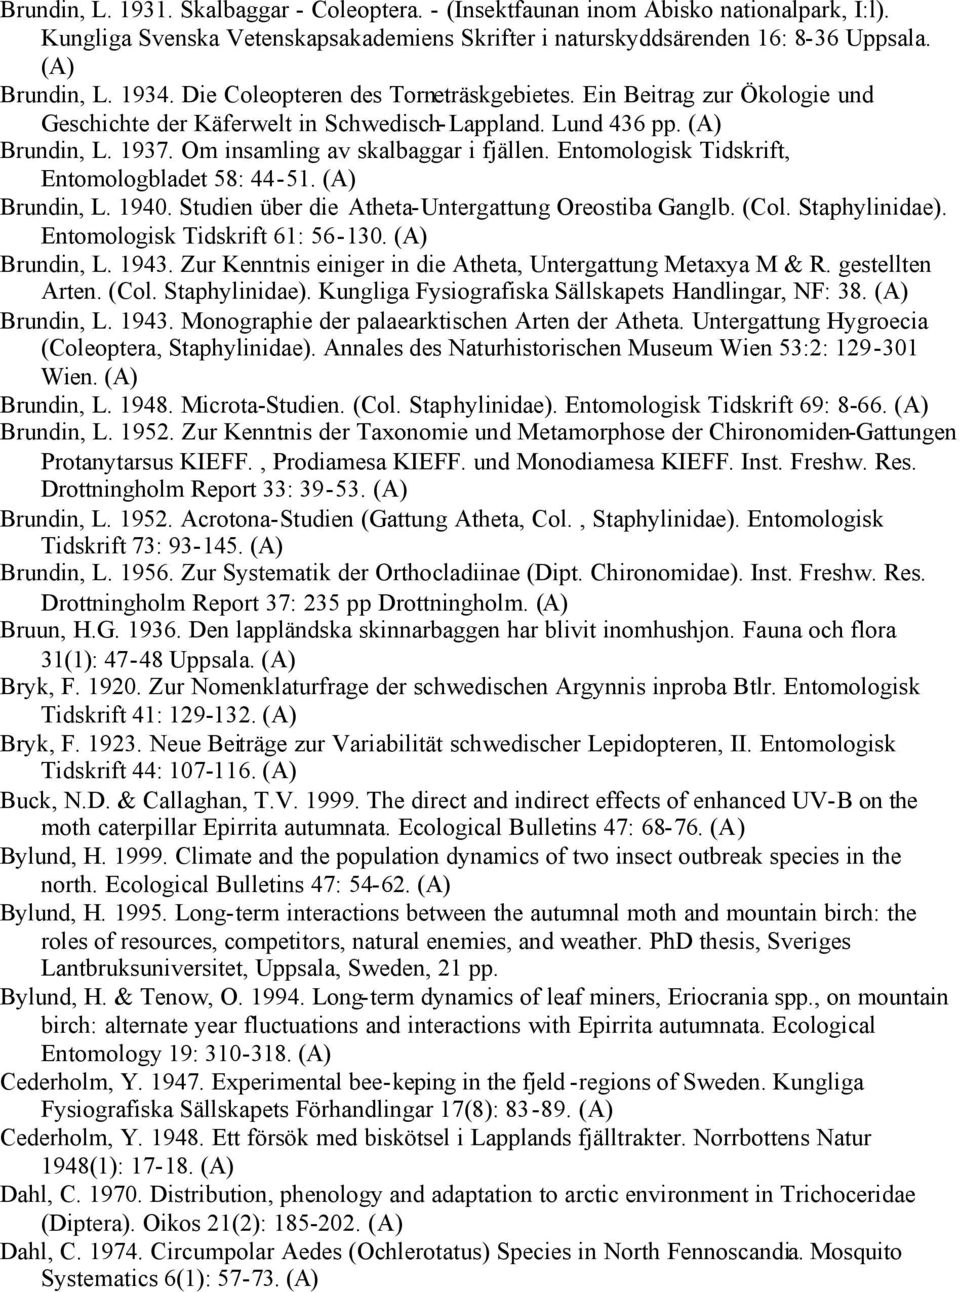 Entomologisk Tidskrift, Entomologbladet 58: 44-51. Brundin, L. 1940. Studien über die Atheta-Untergattung Oreostiba Ganglb. (Col. Staphylinidae). Entomologisk Tidskrift 61: 56-130. Brundin, L. 1943.